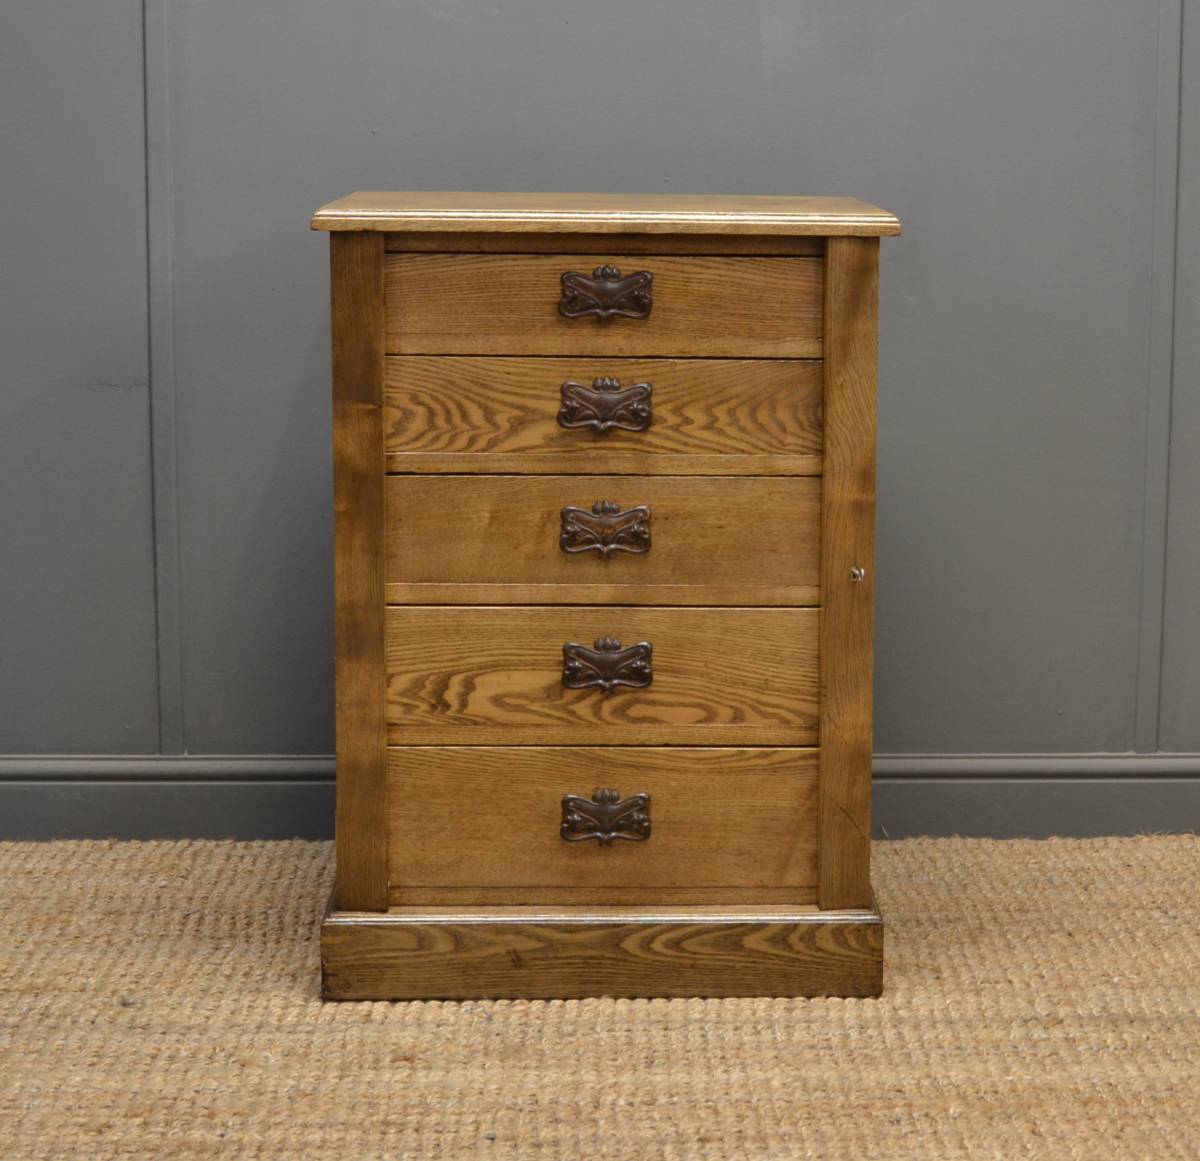 Small Ash Wellington chest with Art Nouveau handles.